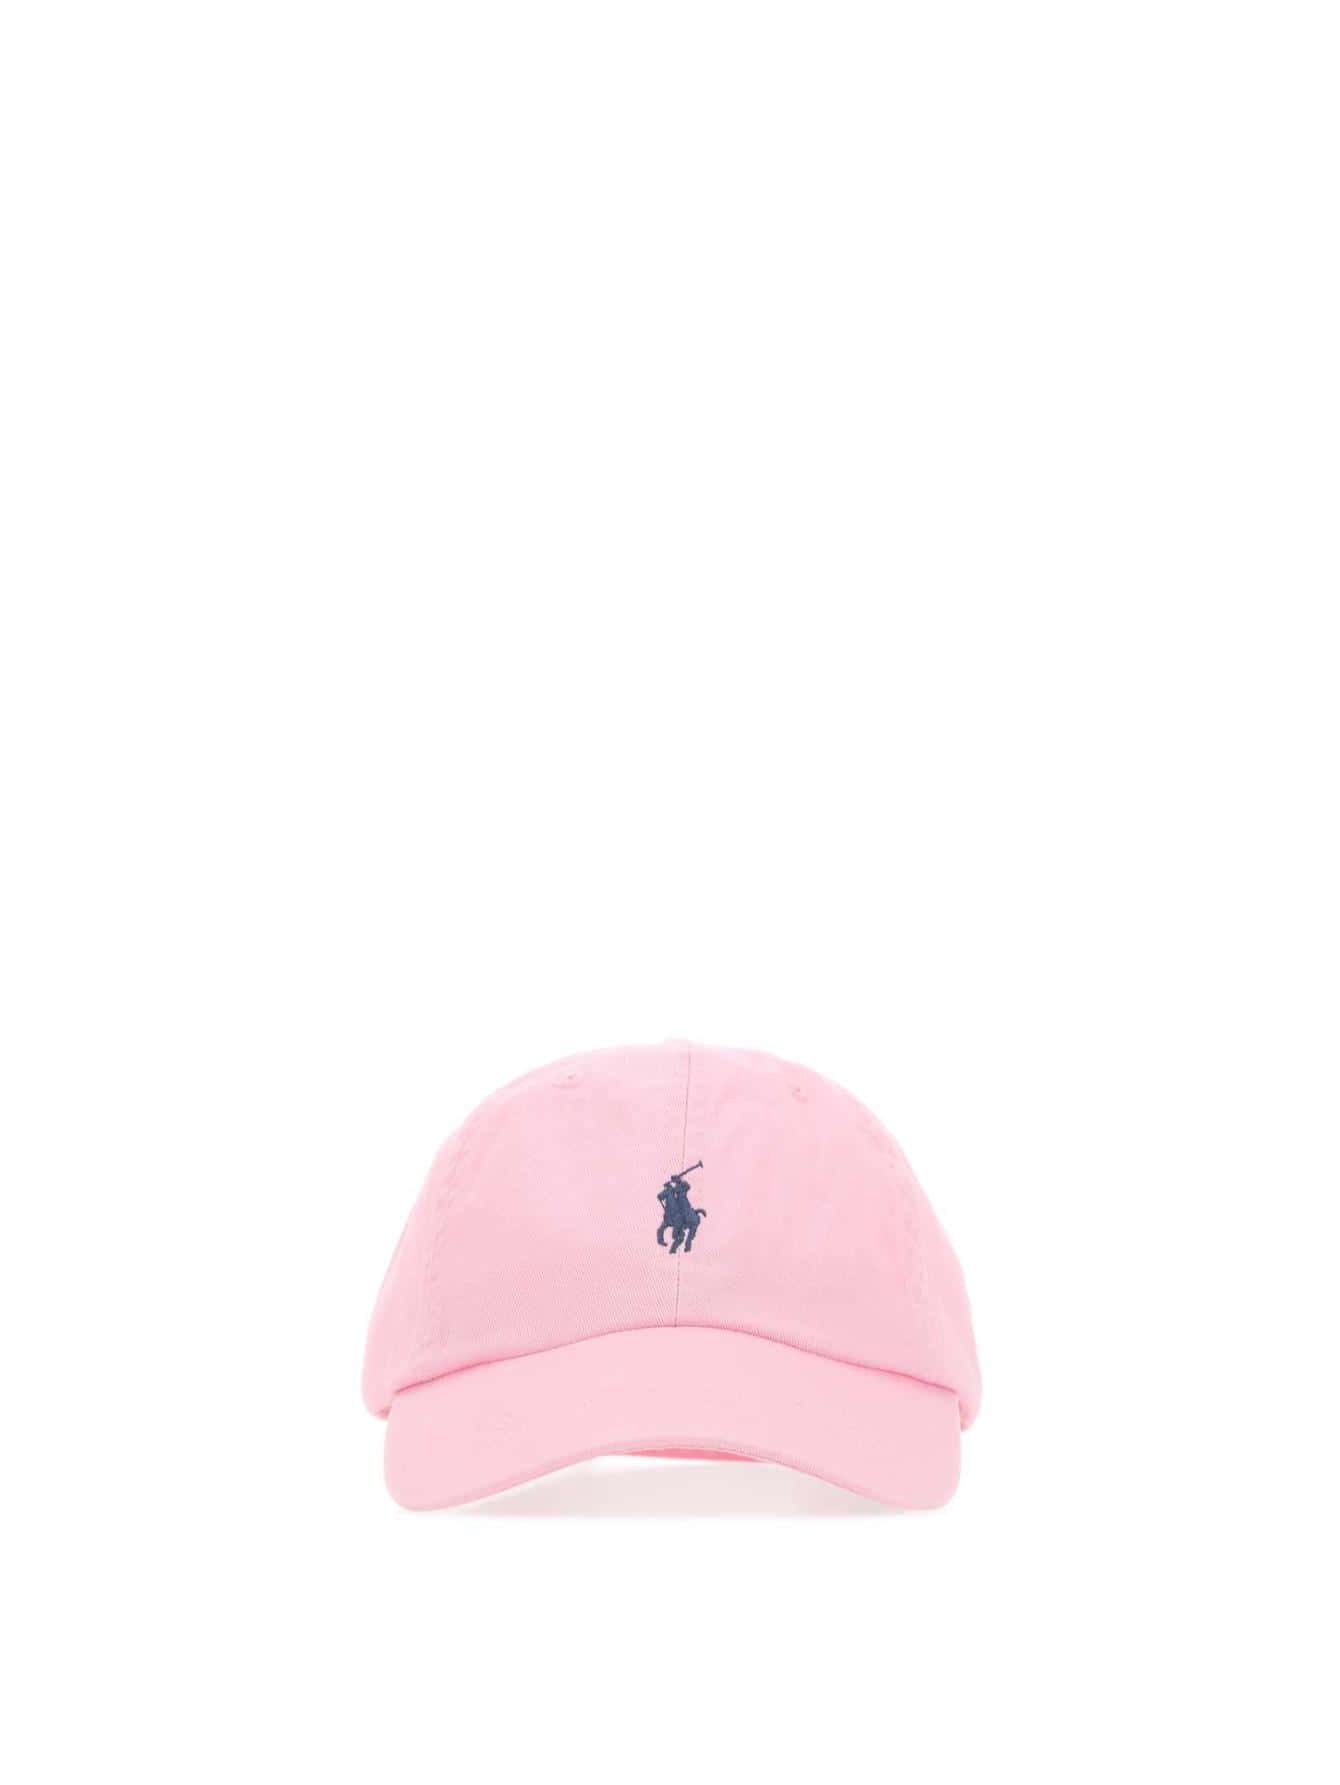 Мужские шапки Polo Ralph Lauren РОЗОВЫЕ 710548524008, розовый мужские кепки polo ralph lauren черные 710548524012 черный